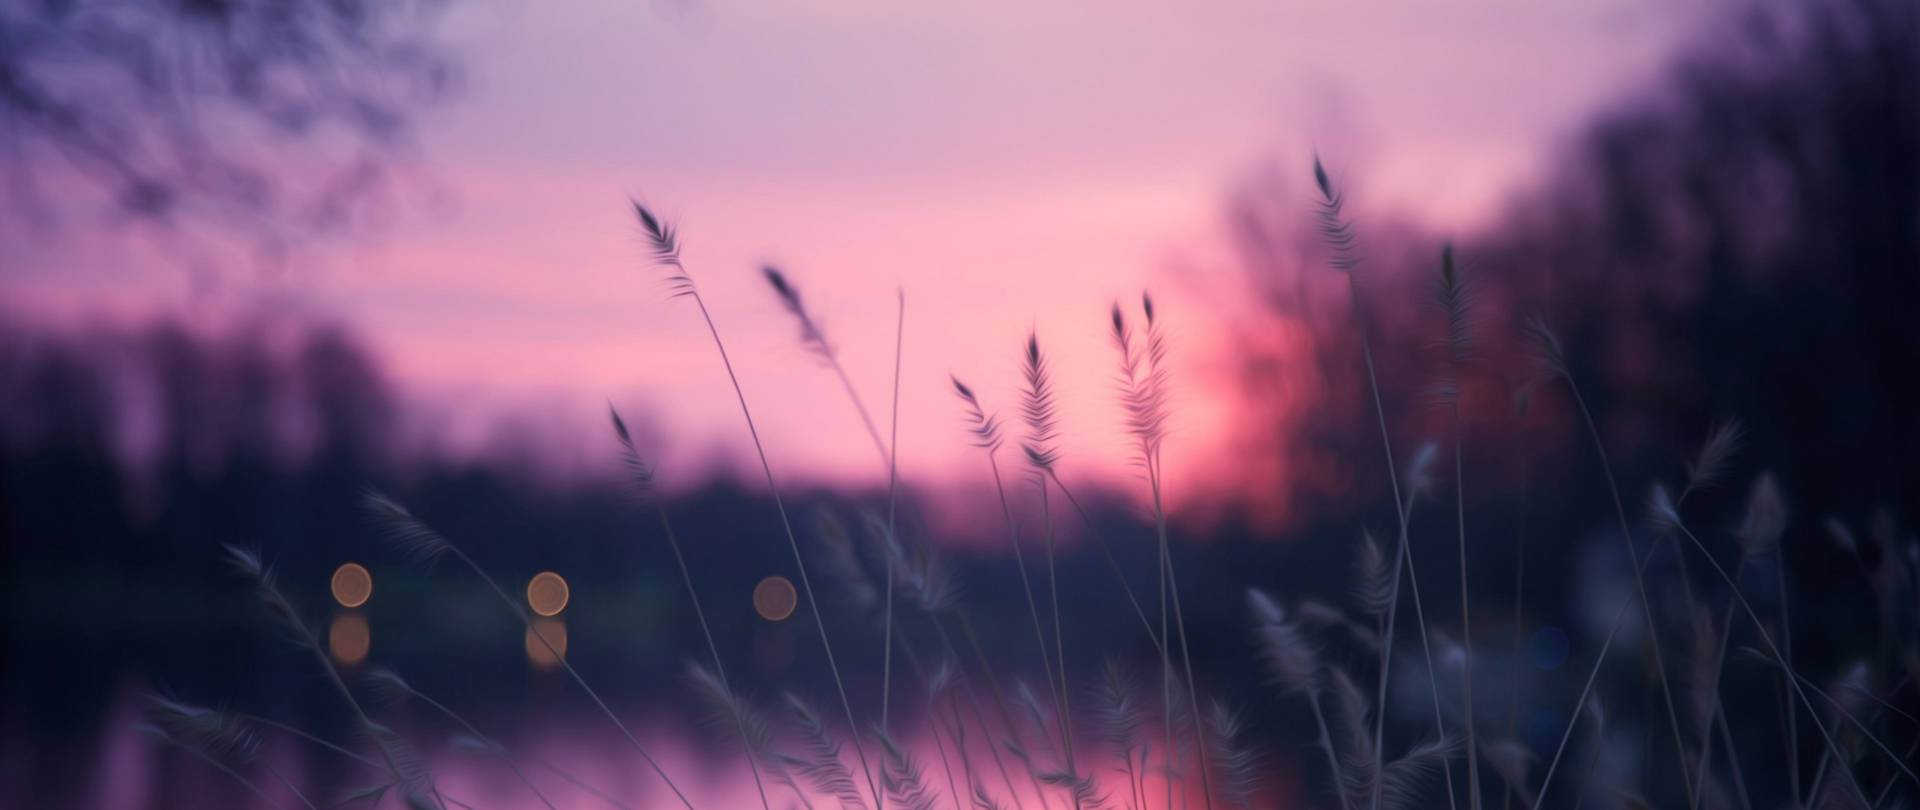 Download Grass Under Sunset Sky Pinterest Laptop Wallpaper 